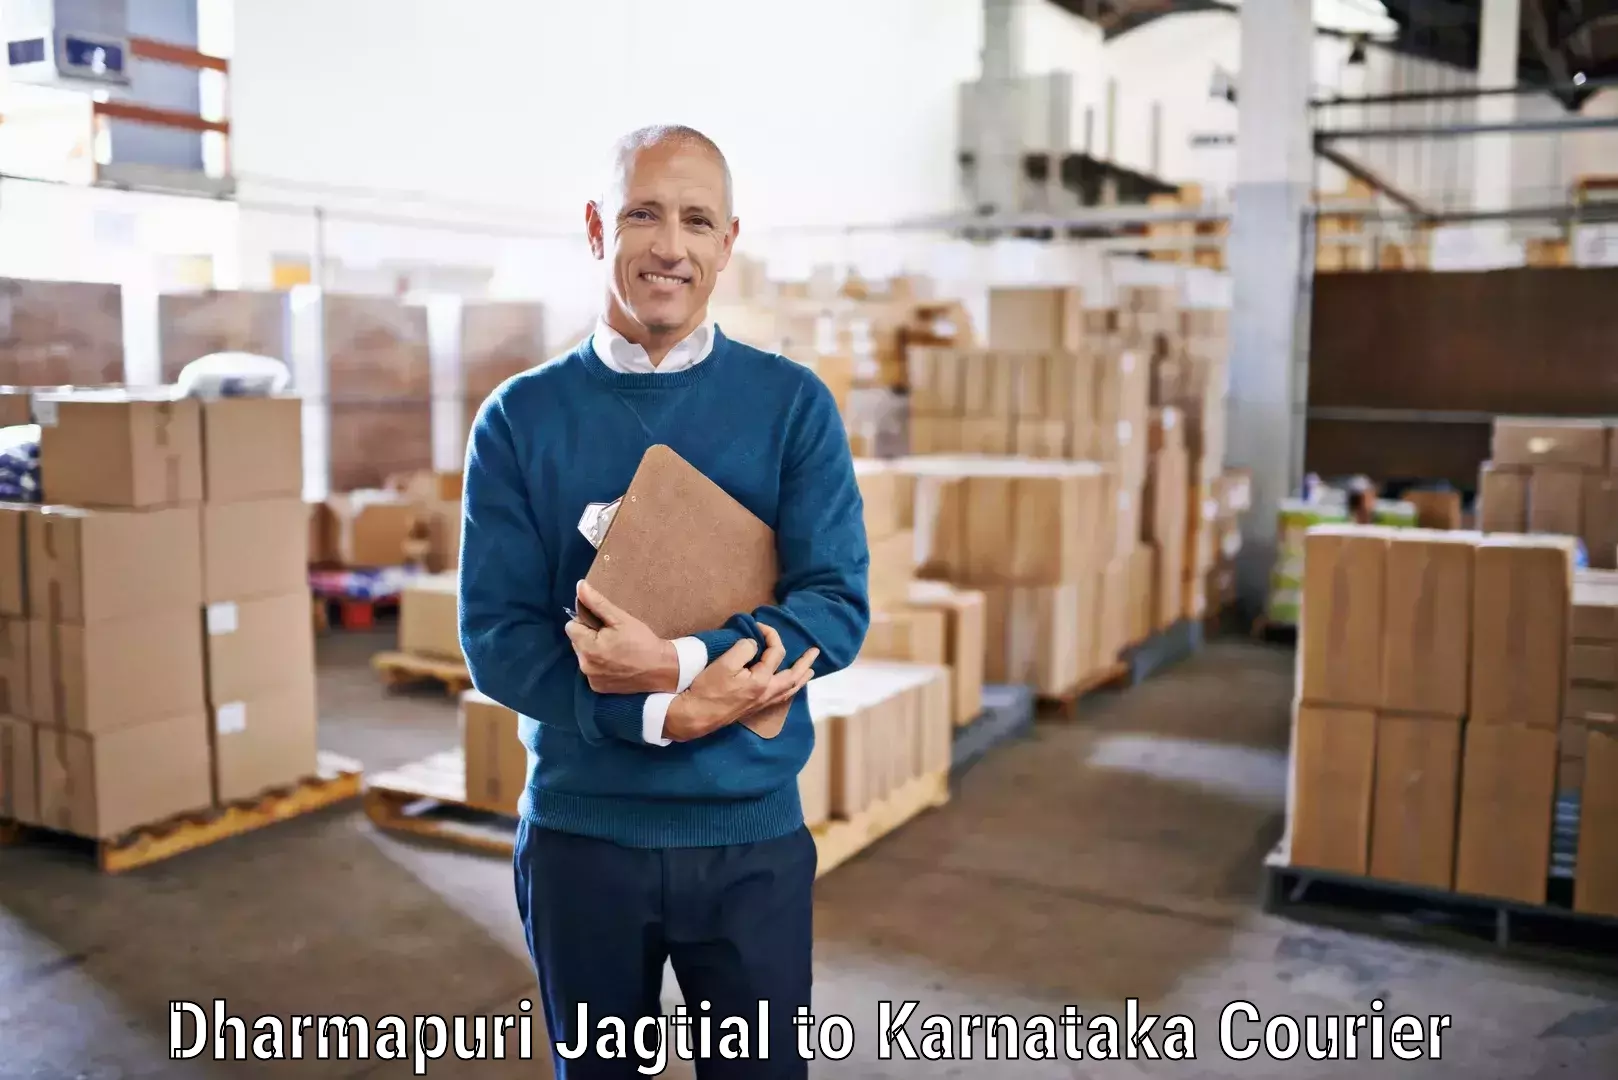 Round-the-clock parcel delivery Dharmapuri Jagtial to Mandya